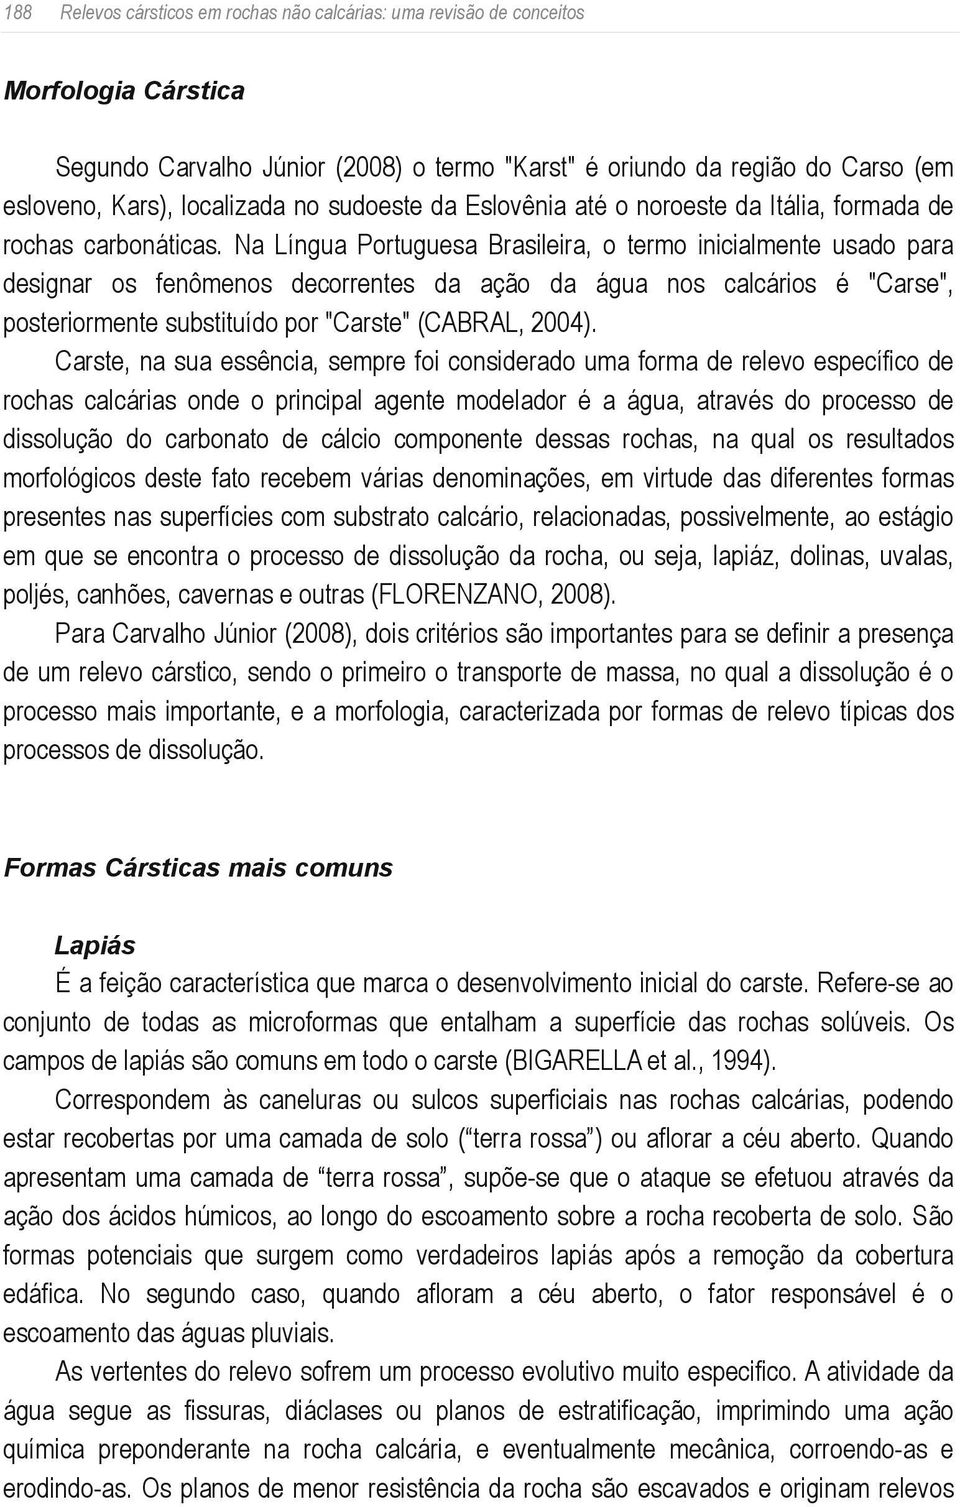 Na Língua Portuguesa Brasileira, o termo inicialmente usado para designar os fenômenos decorrentes da ação da água nos calcários é "Carse", posteriormente substituído por "Carste" (CABRAL, 2004).